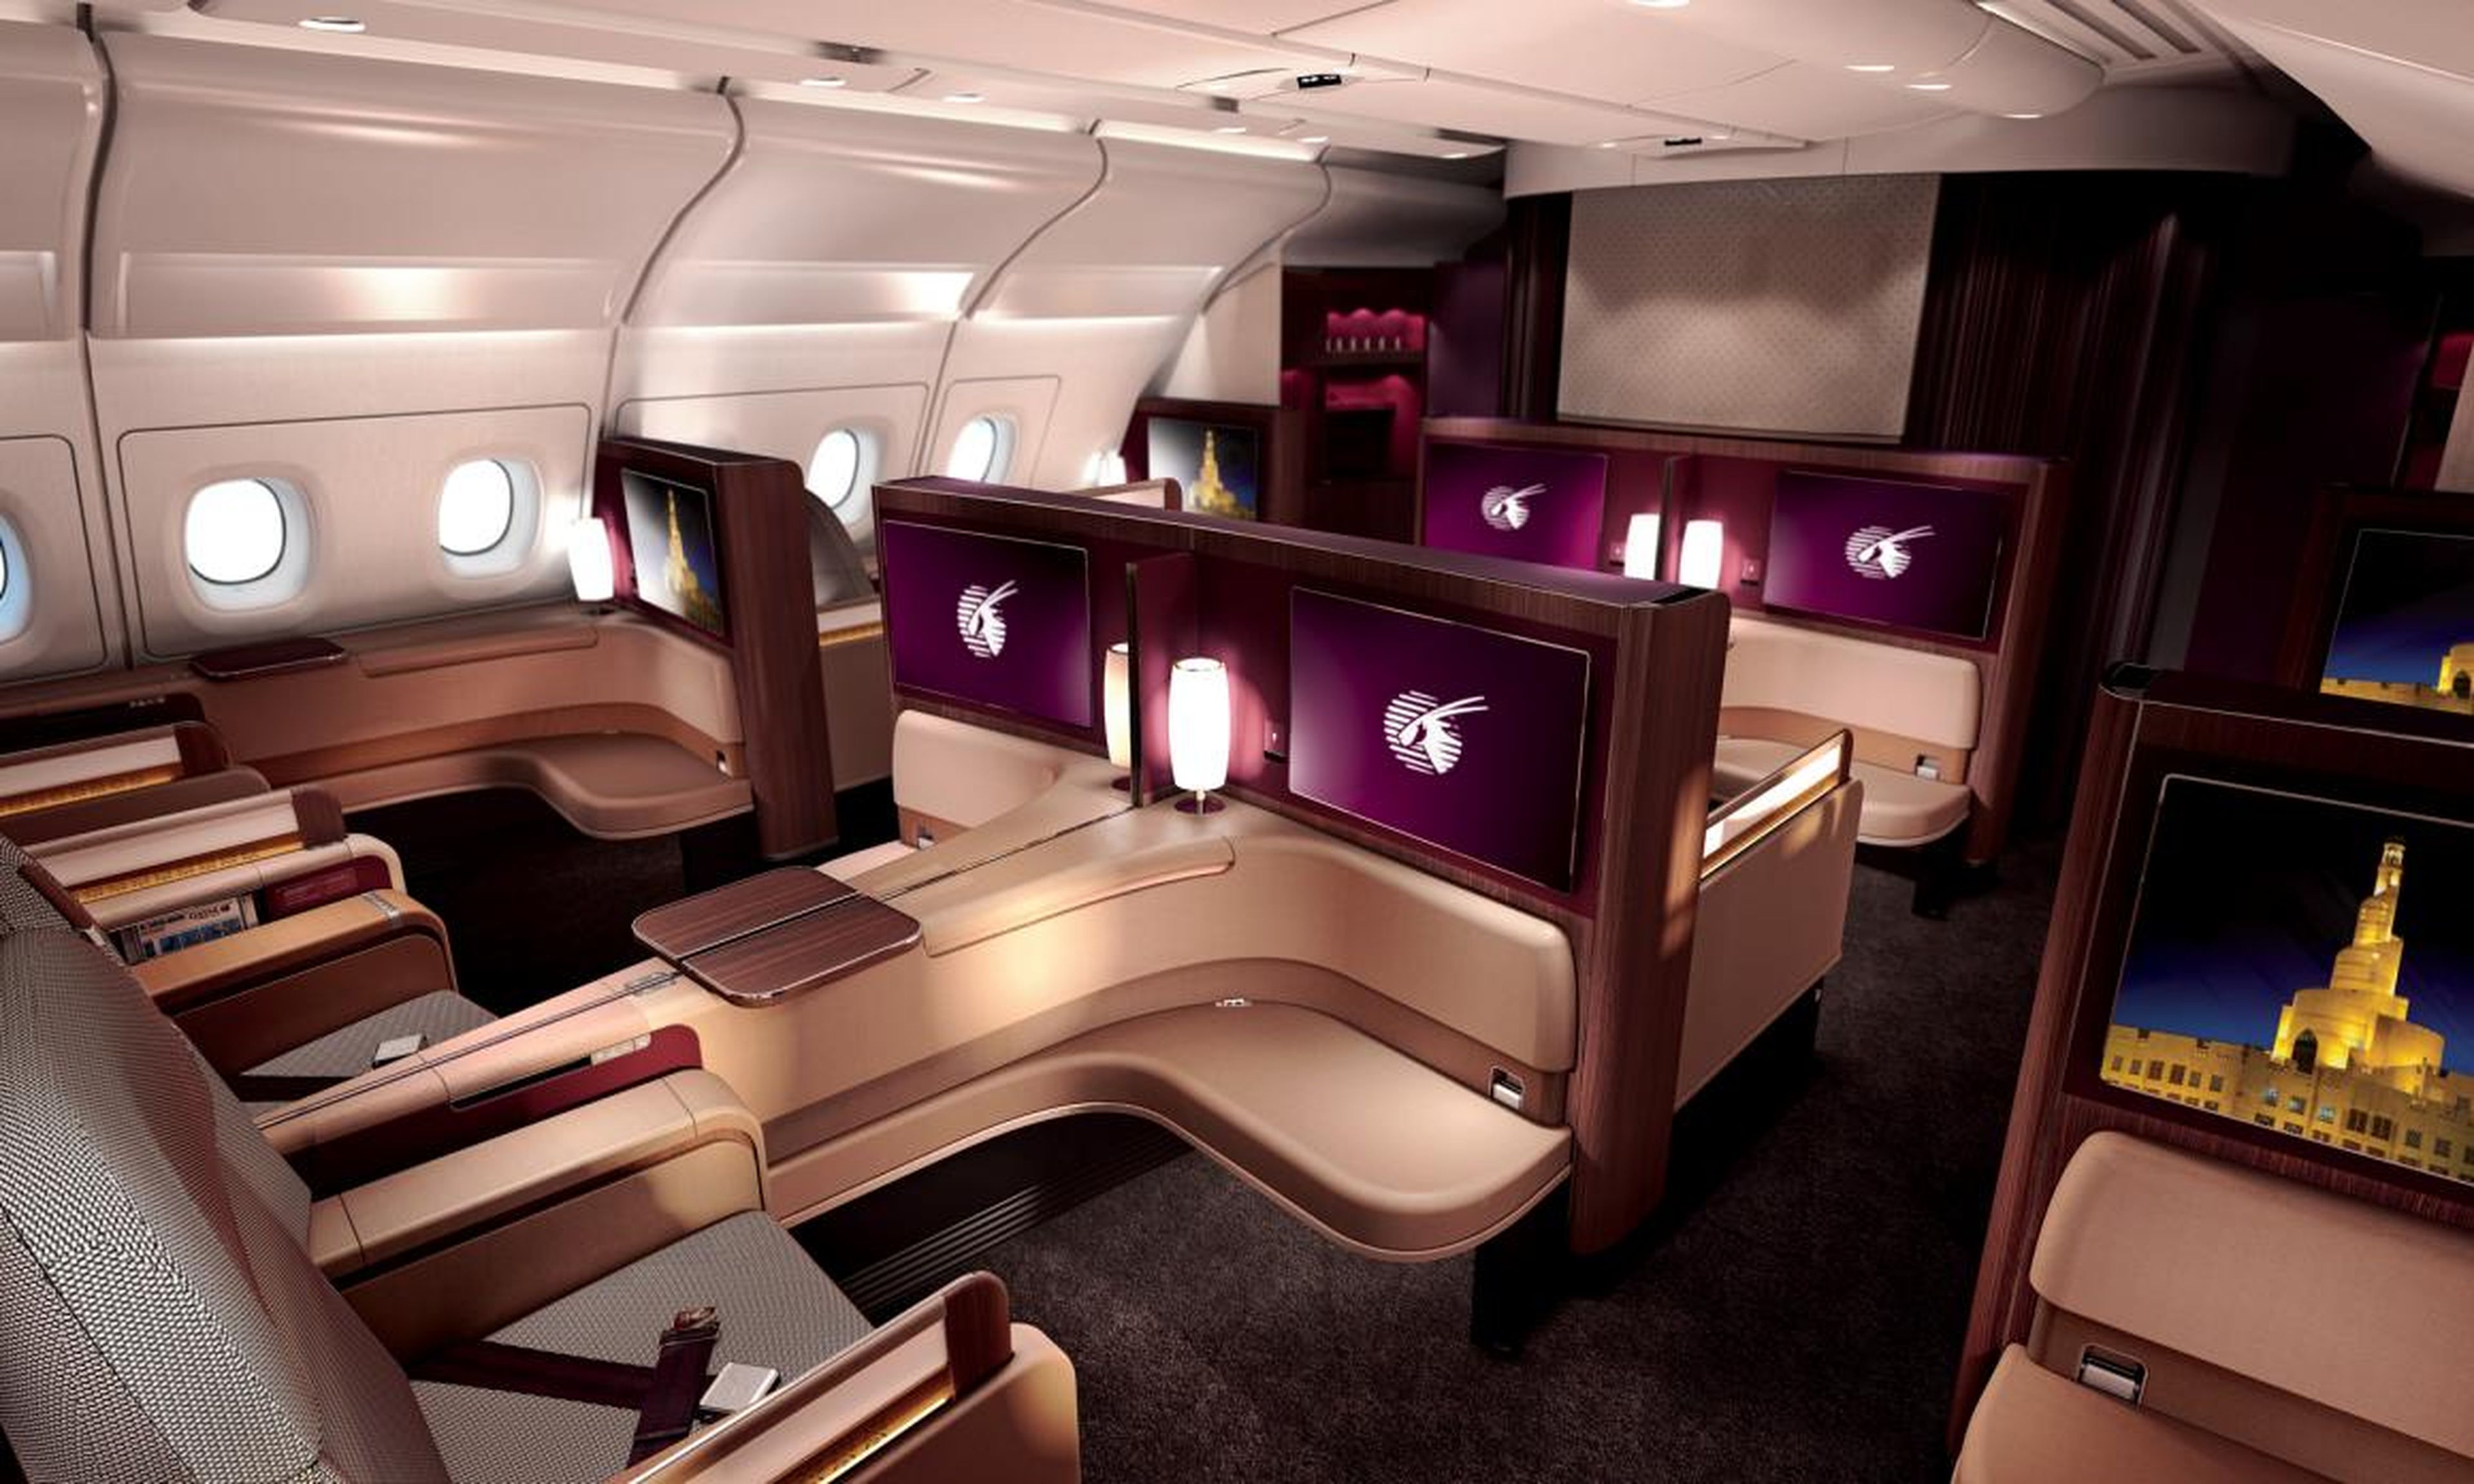 7. Qatar Airways